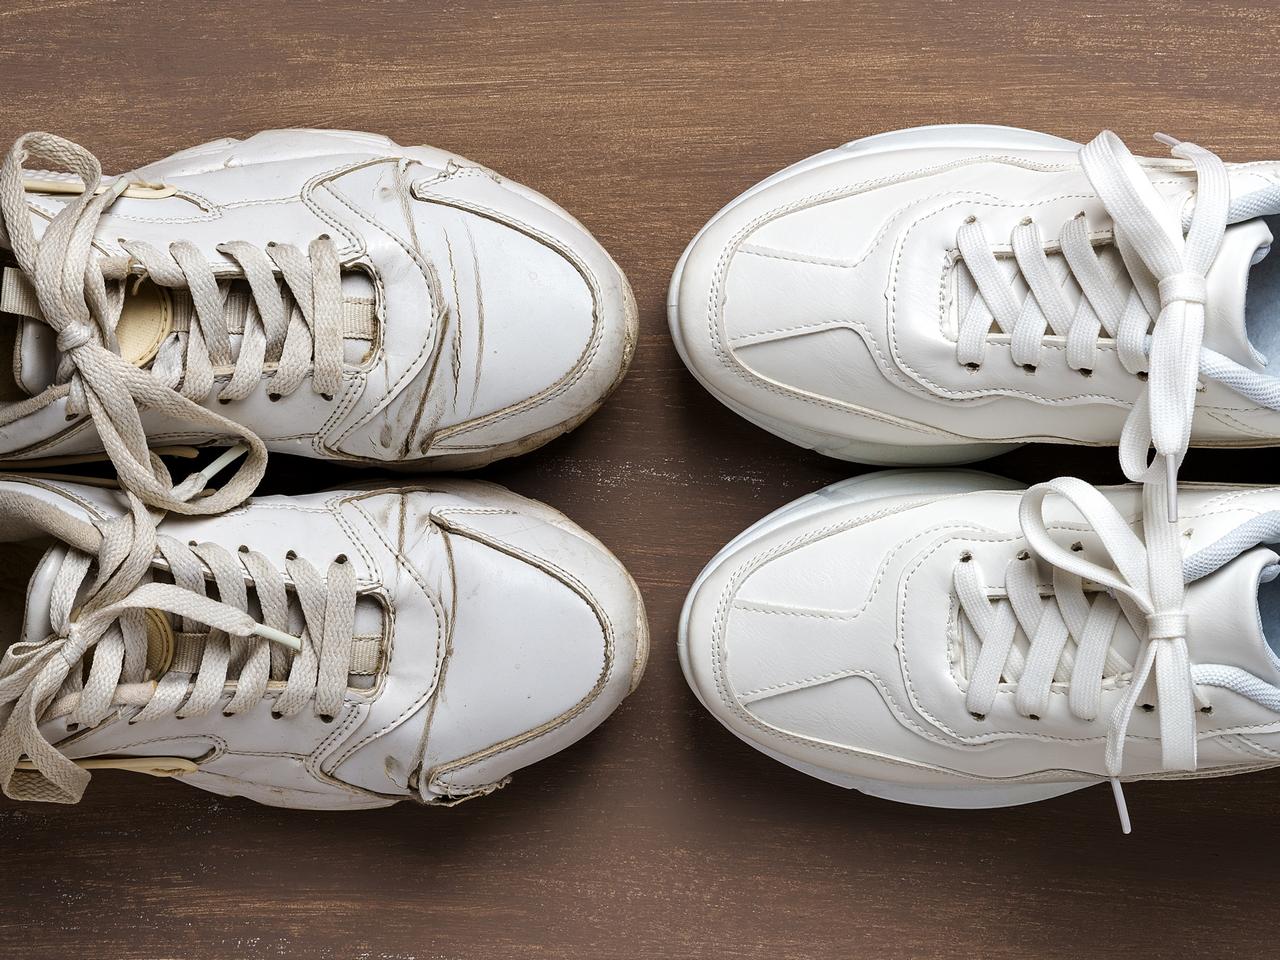 Jak czyścić białe buty? Kapitalny trik, a będą czyste jak nowe w kilka sekund. Potrzebujesz jednej rzeczy z dziecięcego piórnika